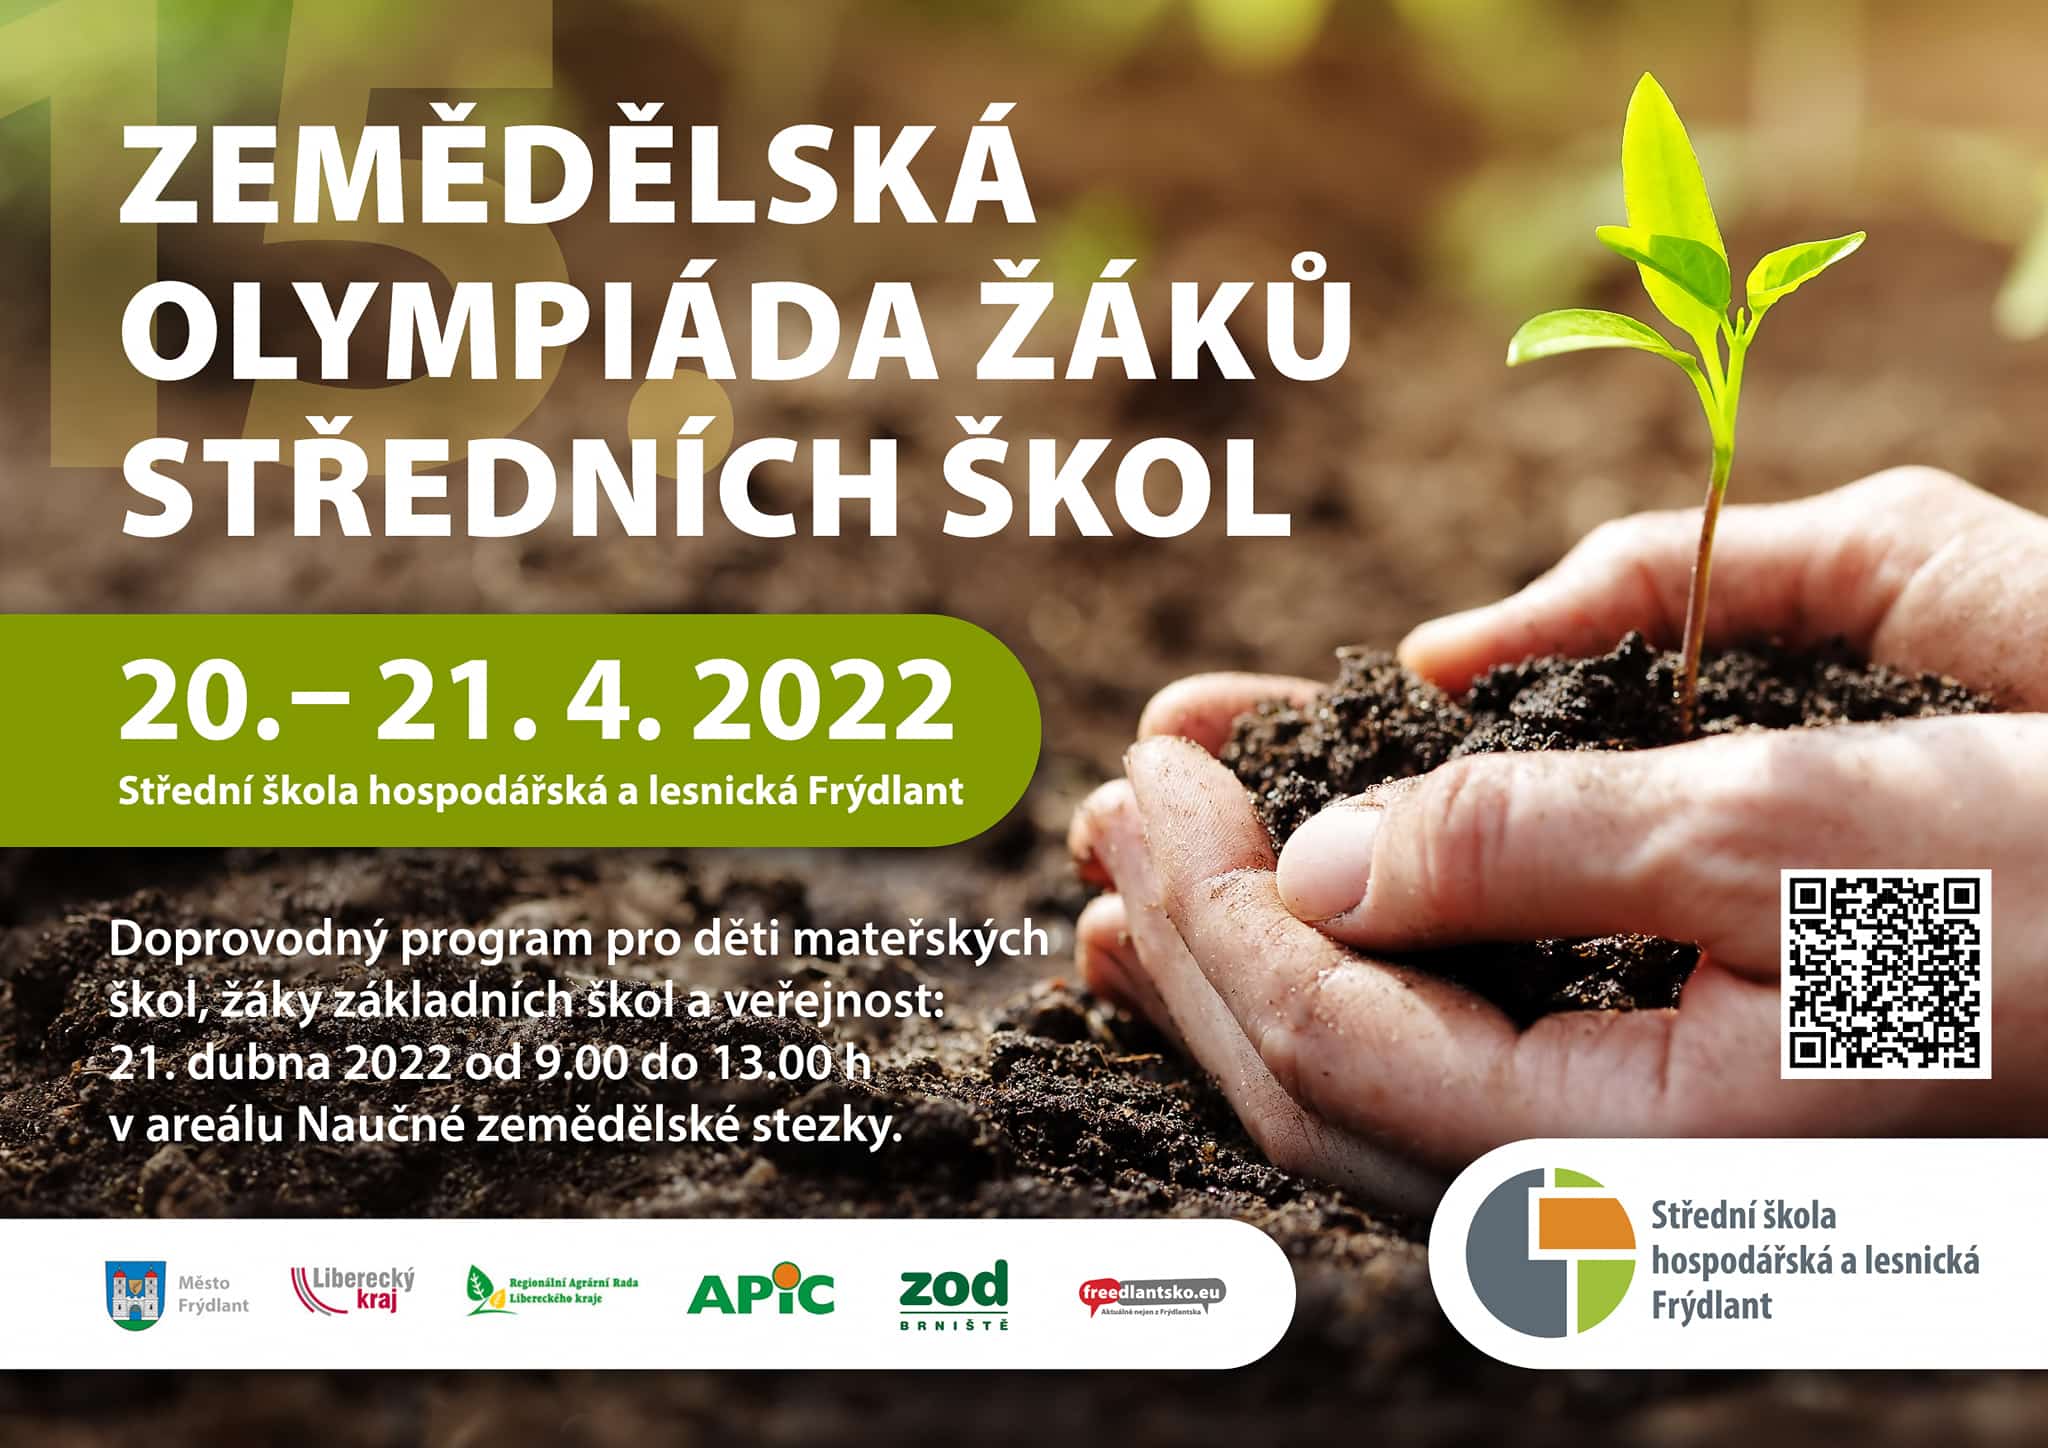 168 stredni skola hospodarska lesnicka zemedelsk olympiada  2022 frydlantsko